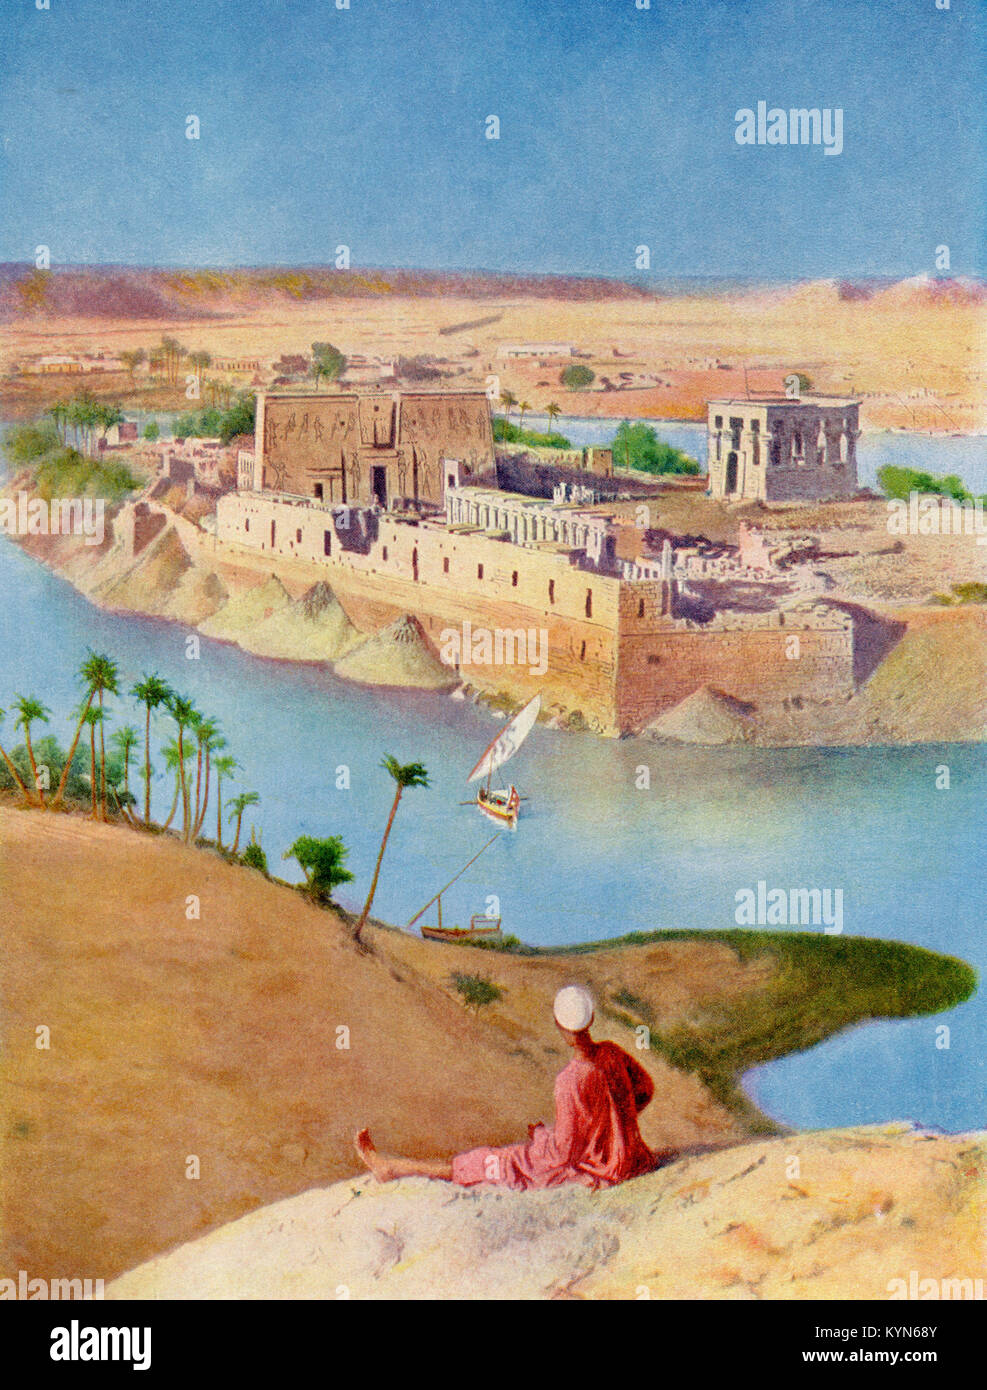 Die Tempelanlage auf der Insel Philae, Ägypten C. 1920. Der Bau des Assuan-Staudamms bedeutete, dass die Insel zwischen November und Juni überschwemmt wurde, wurde sie später demontiert und zur Insel Agilkia verlagert, Nil. Von den Wundern der Welt, veröffentlicht C 1920. Stockfoto